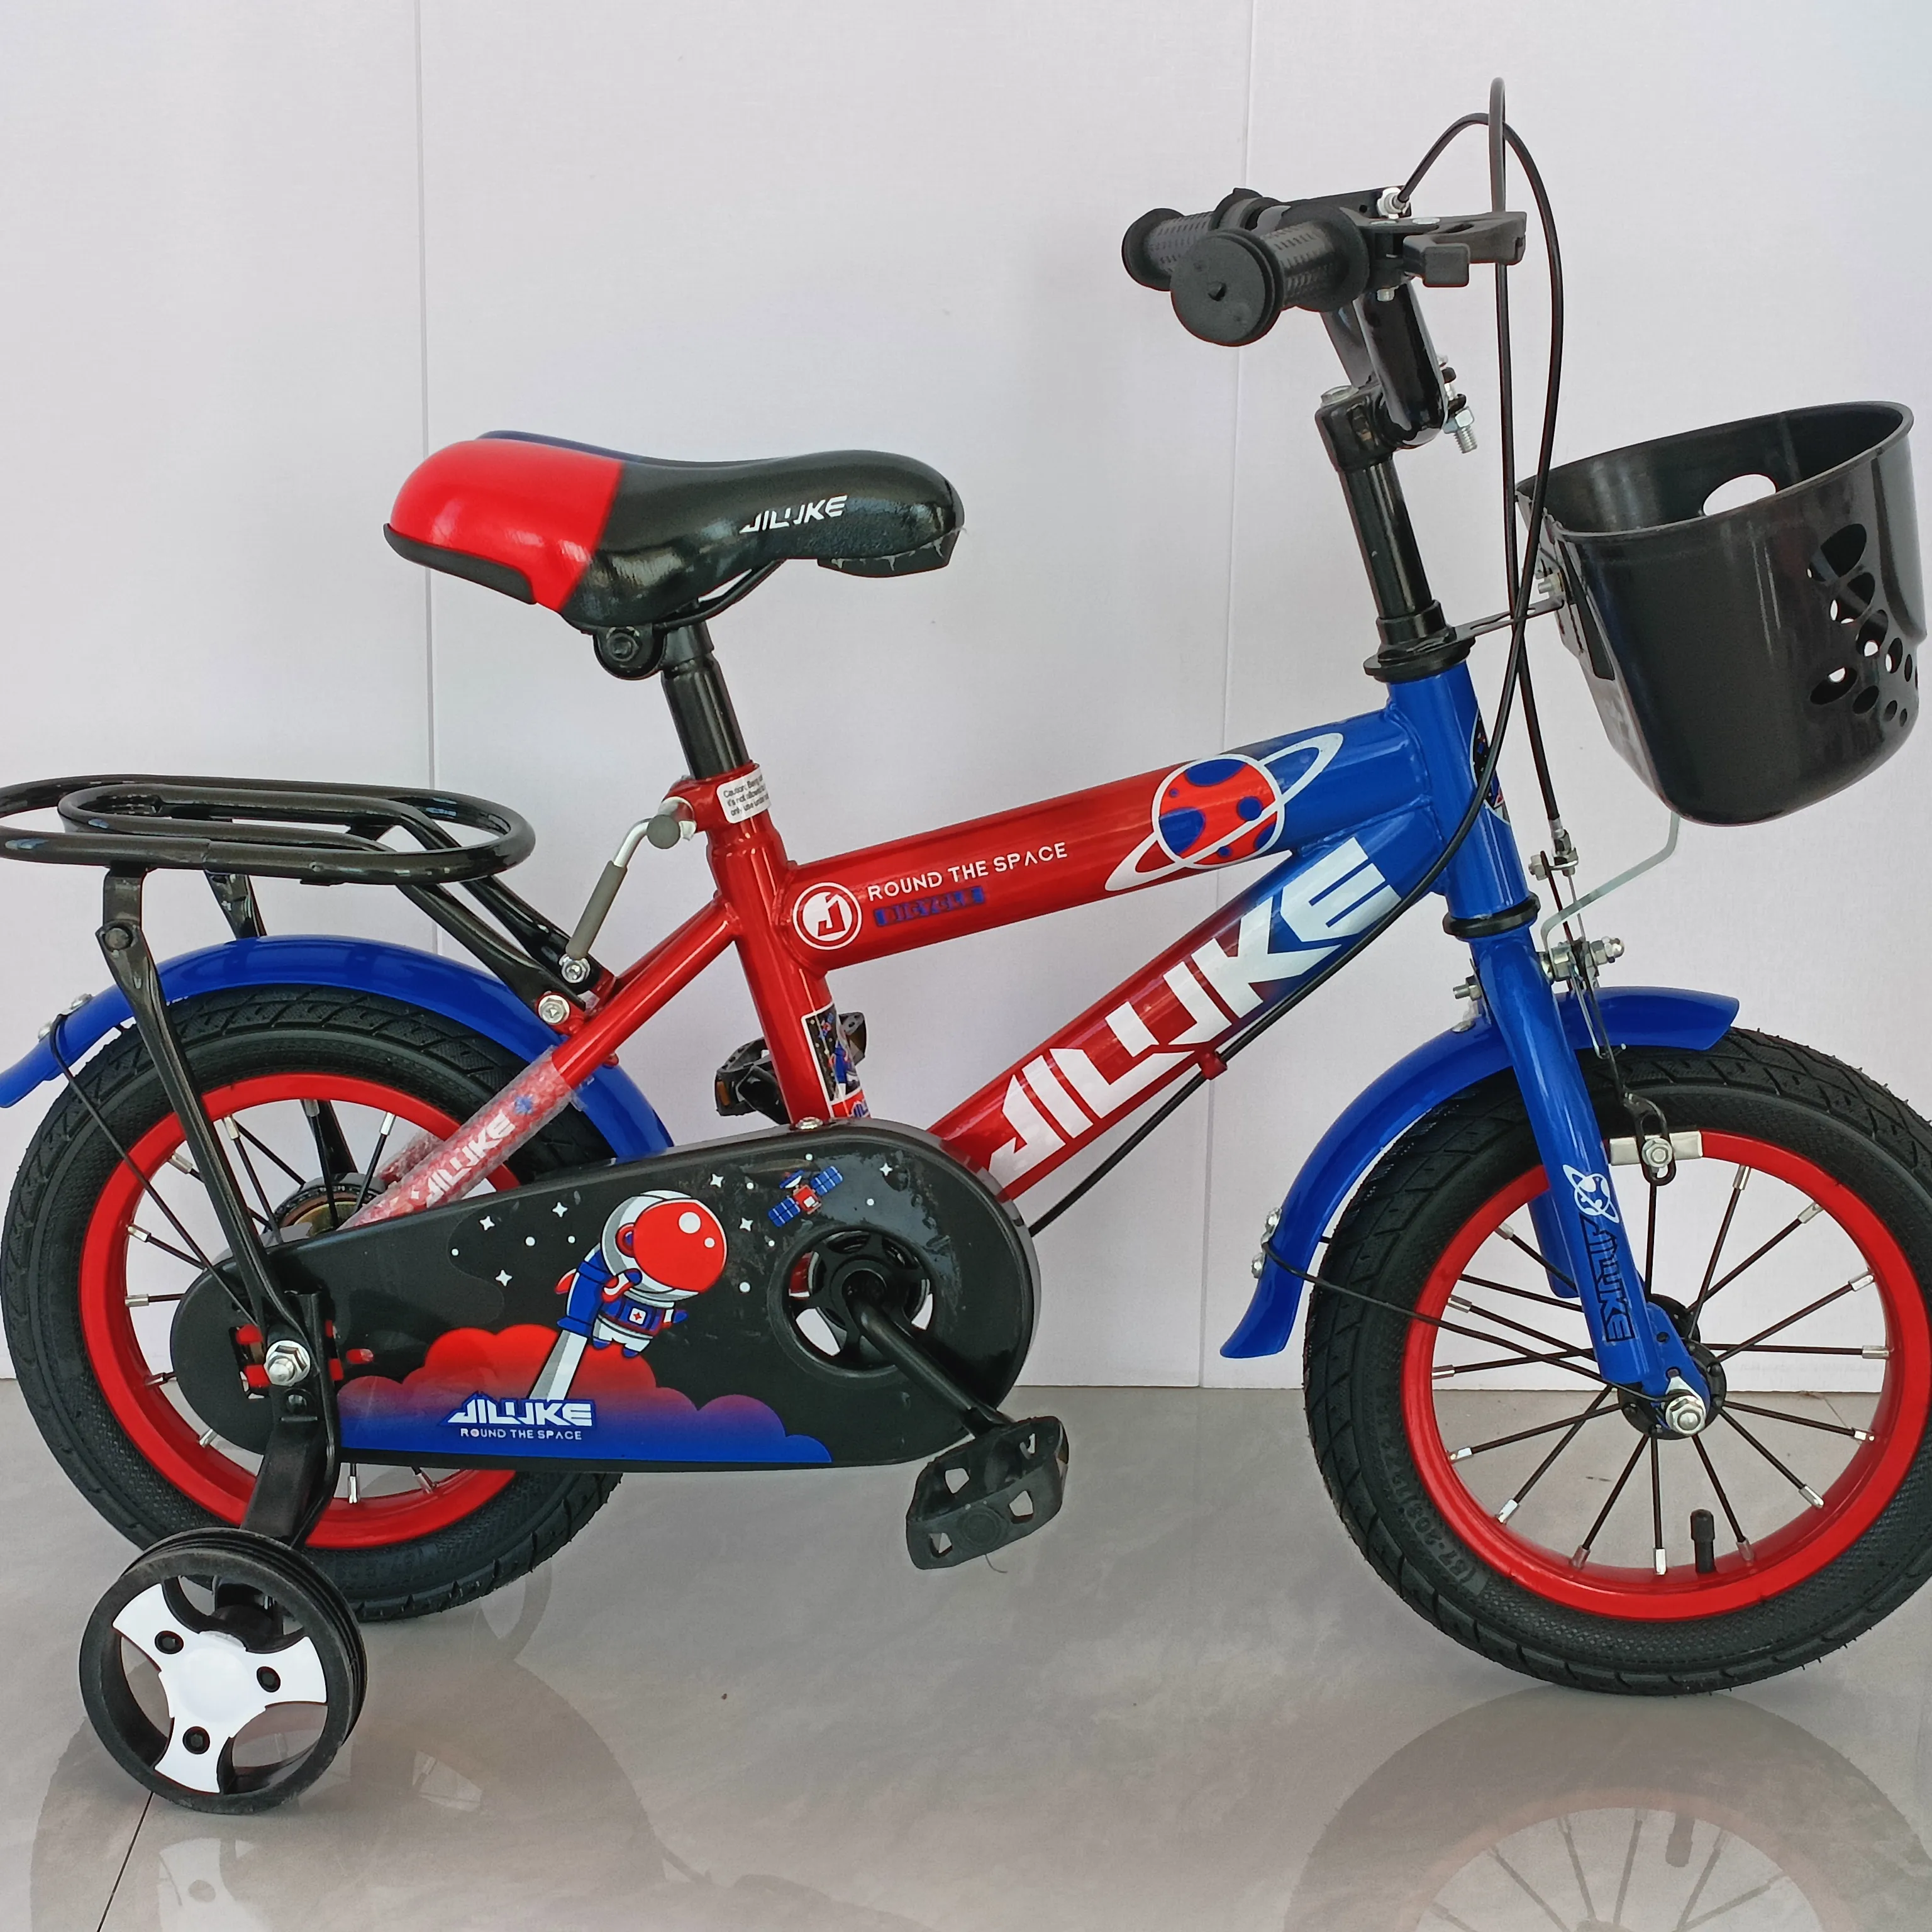 Av3129 a buon mercato della bicicletta cina prezzo all'ingrosso per bambini bicicletta/bambini bici arabia saudita CE/12 pollici per bambini sport bici